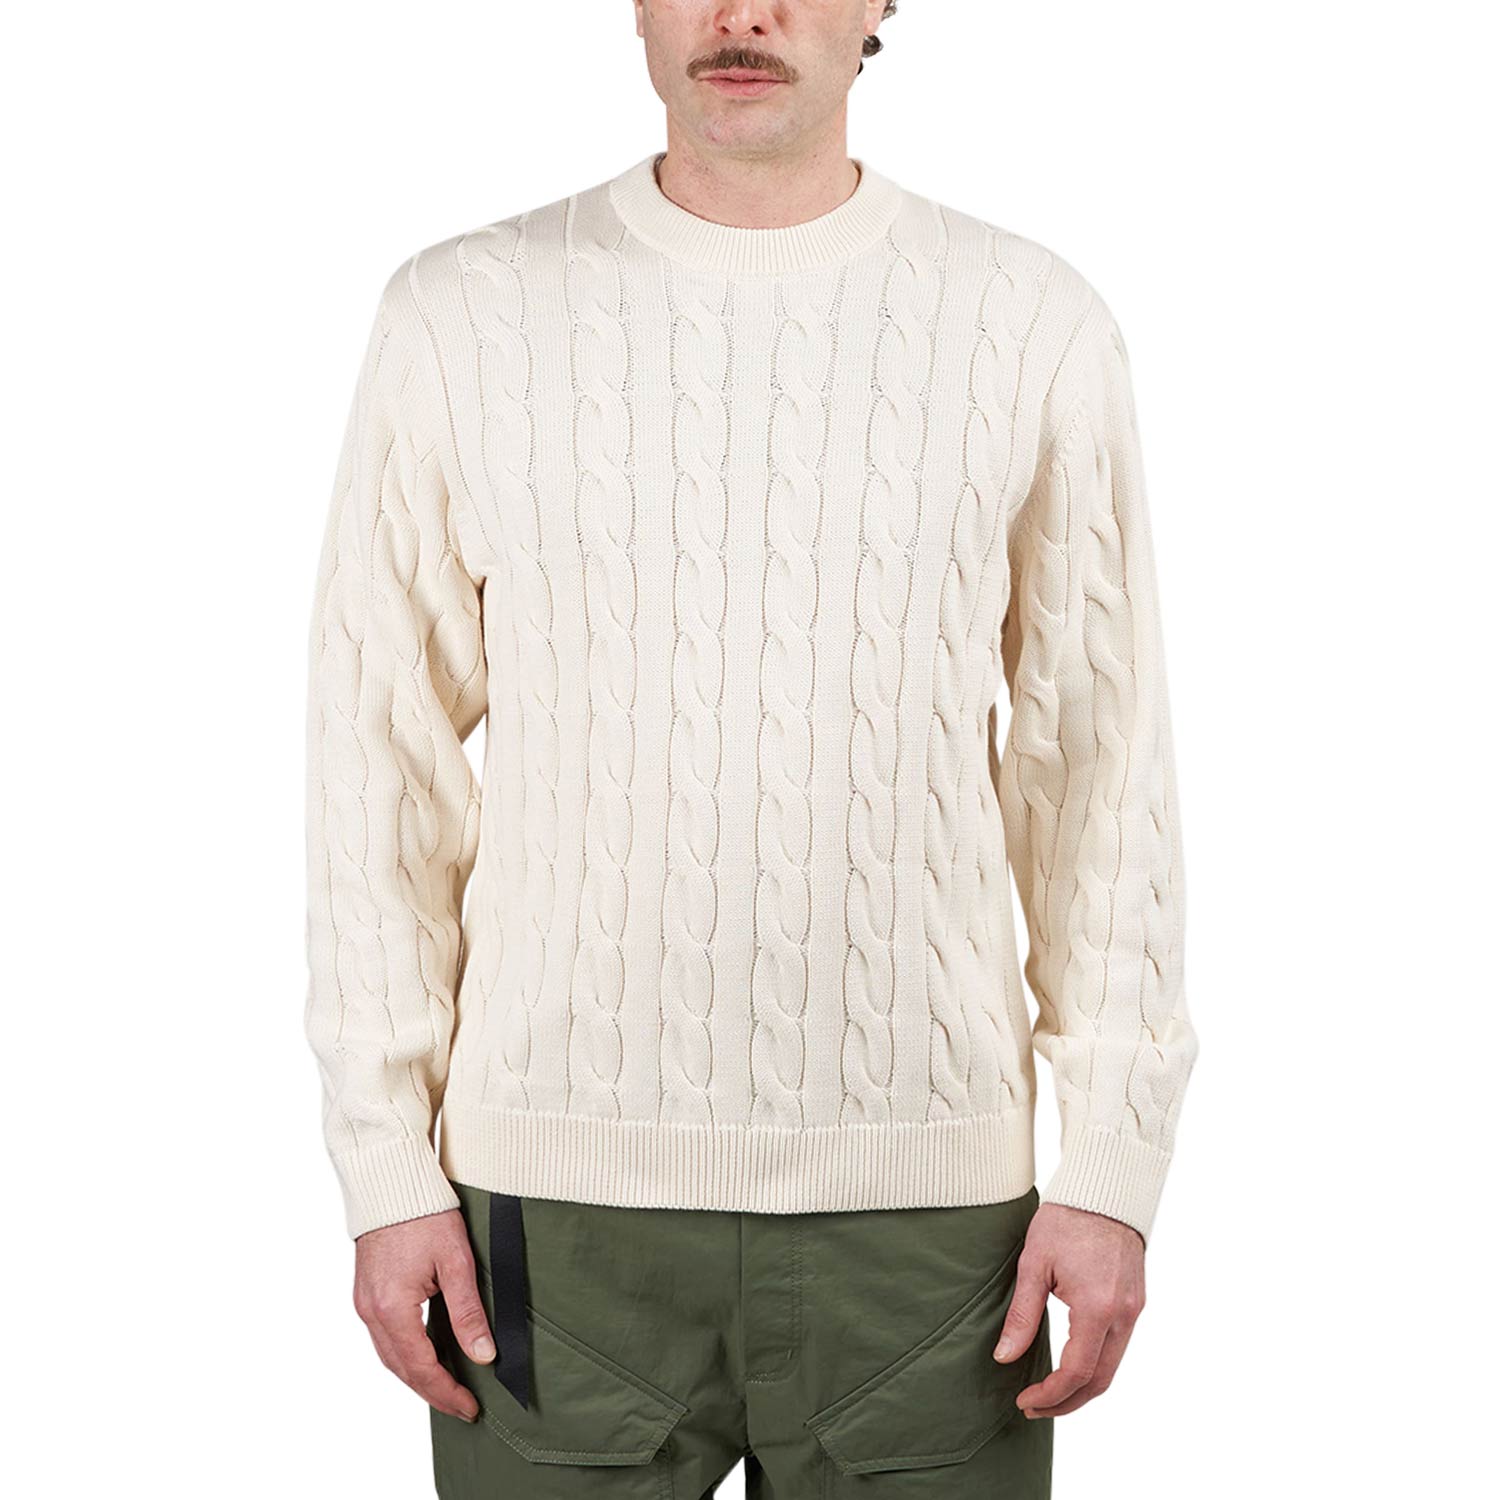 Carhartt WIP Cambell Sweater (Creme)  - Cheap Juzsports Jordan Outlet